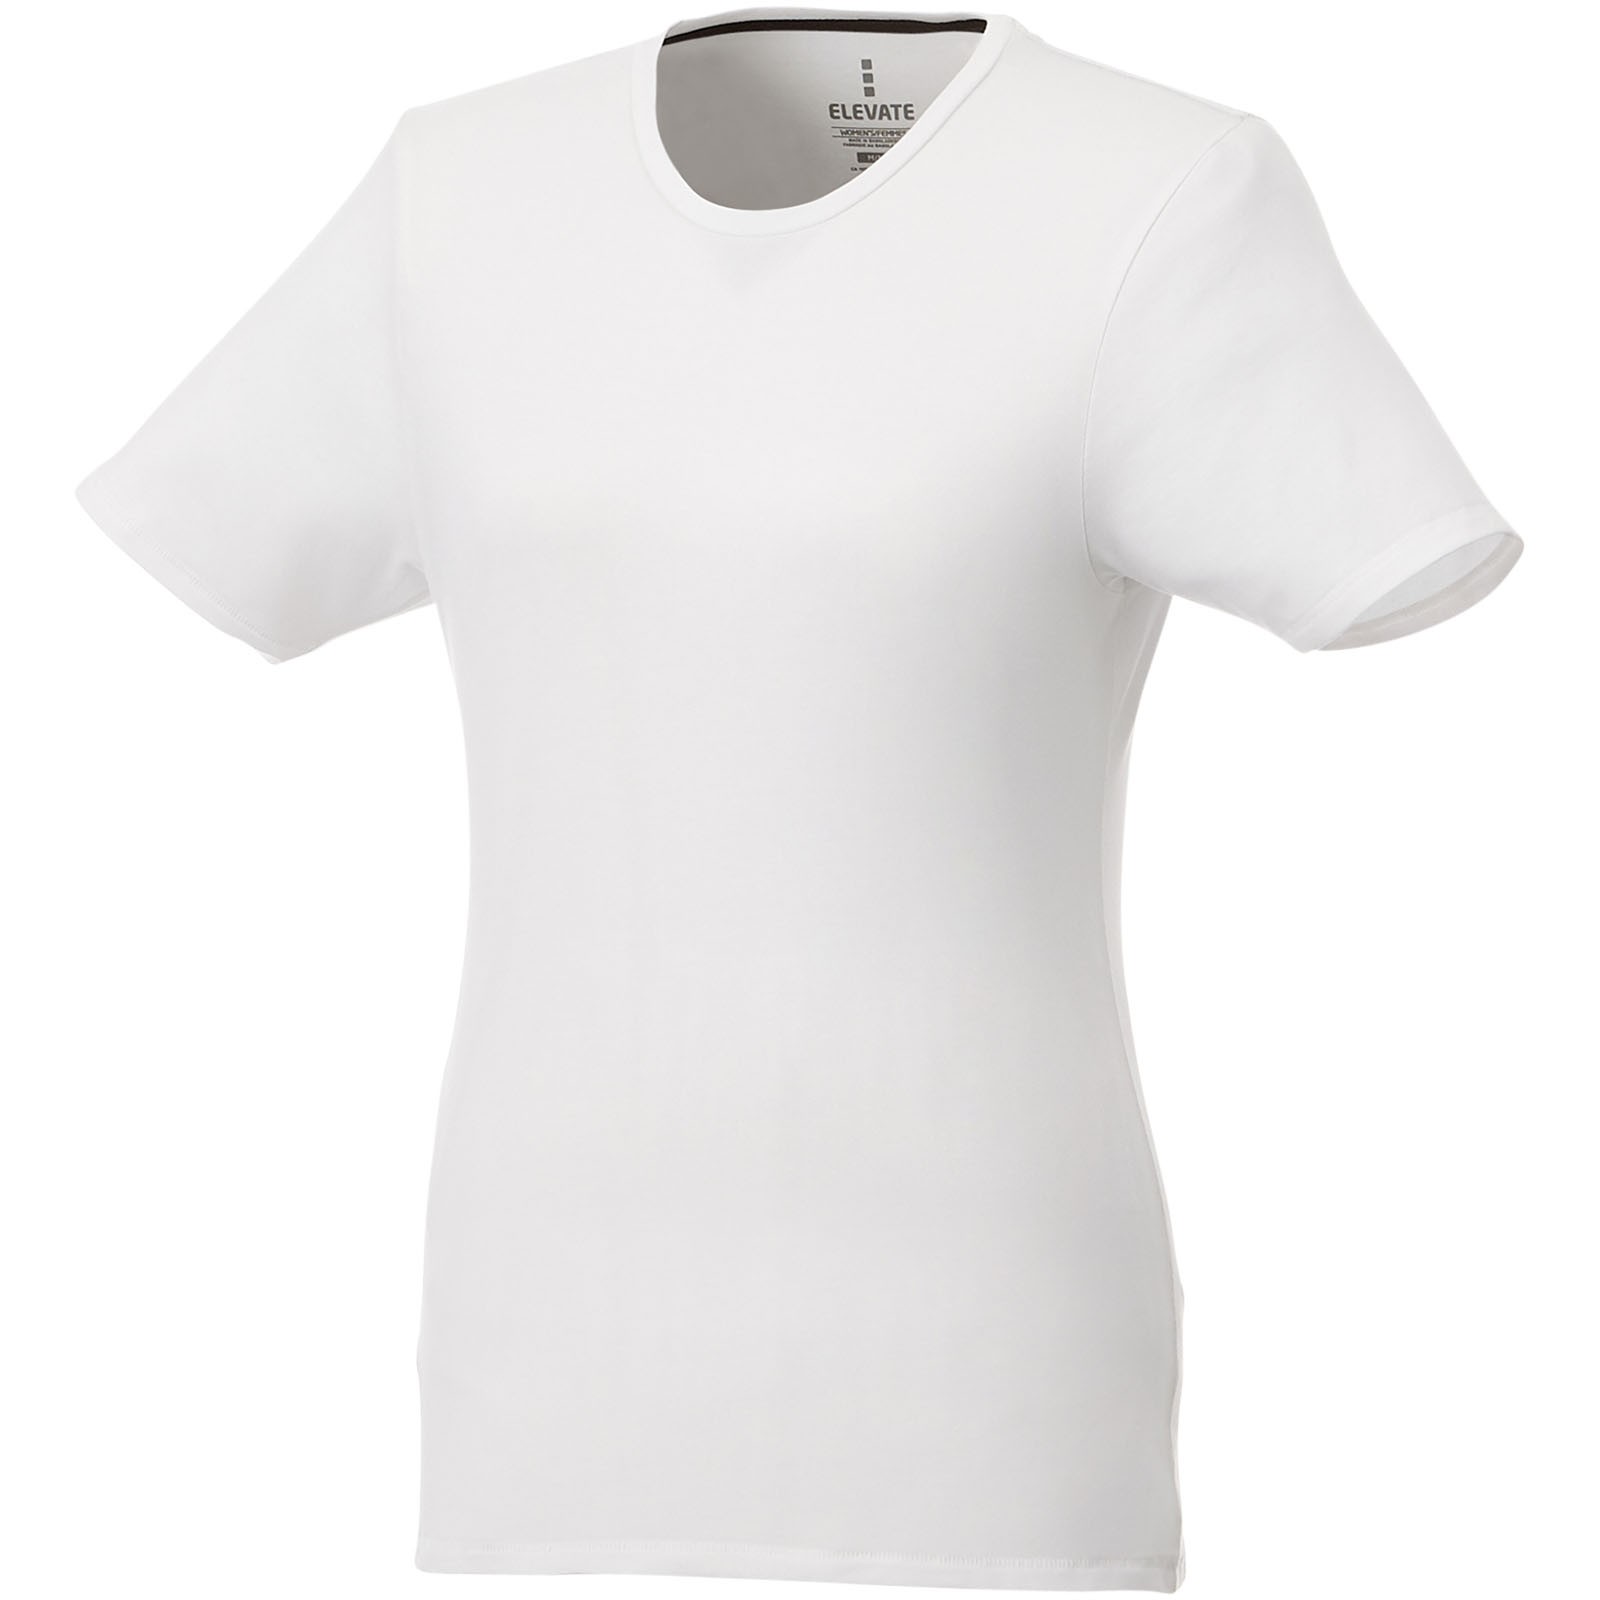 Camisetade manga corta orgánica para mujer "Balfour" - Blanco / XS